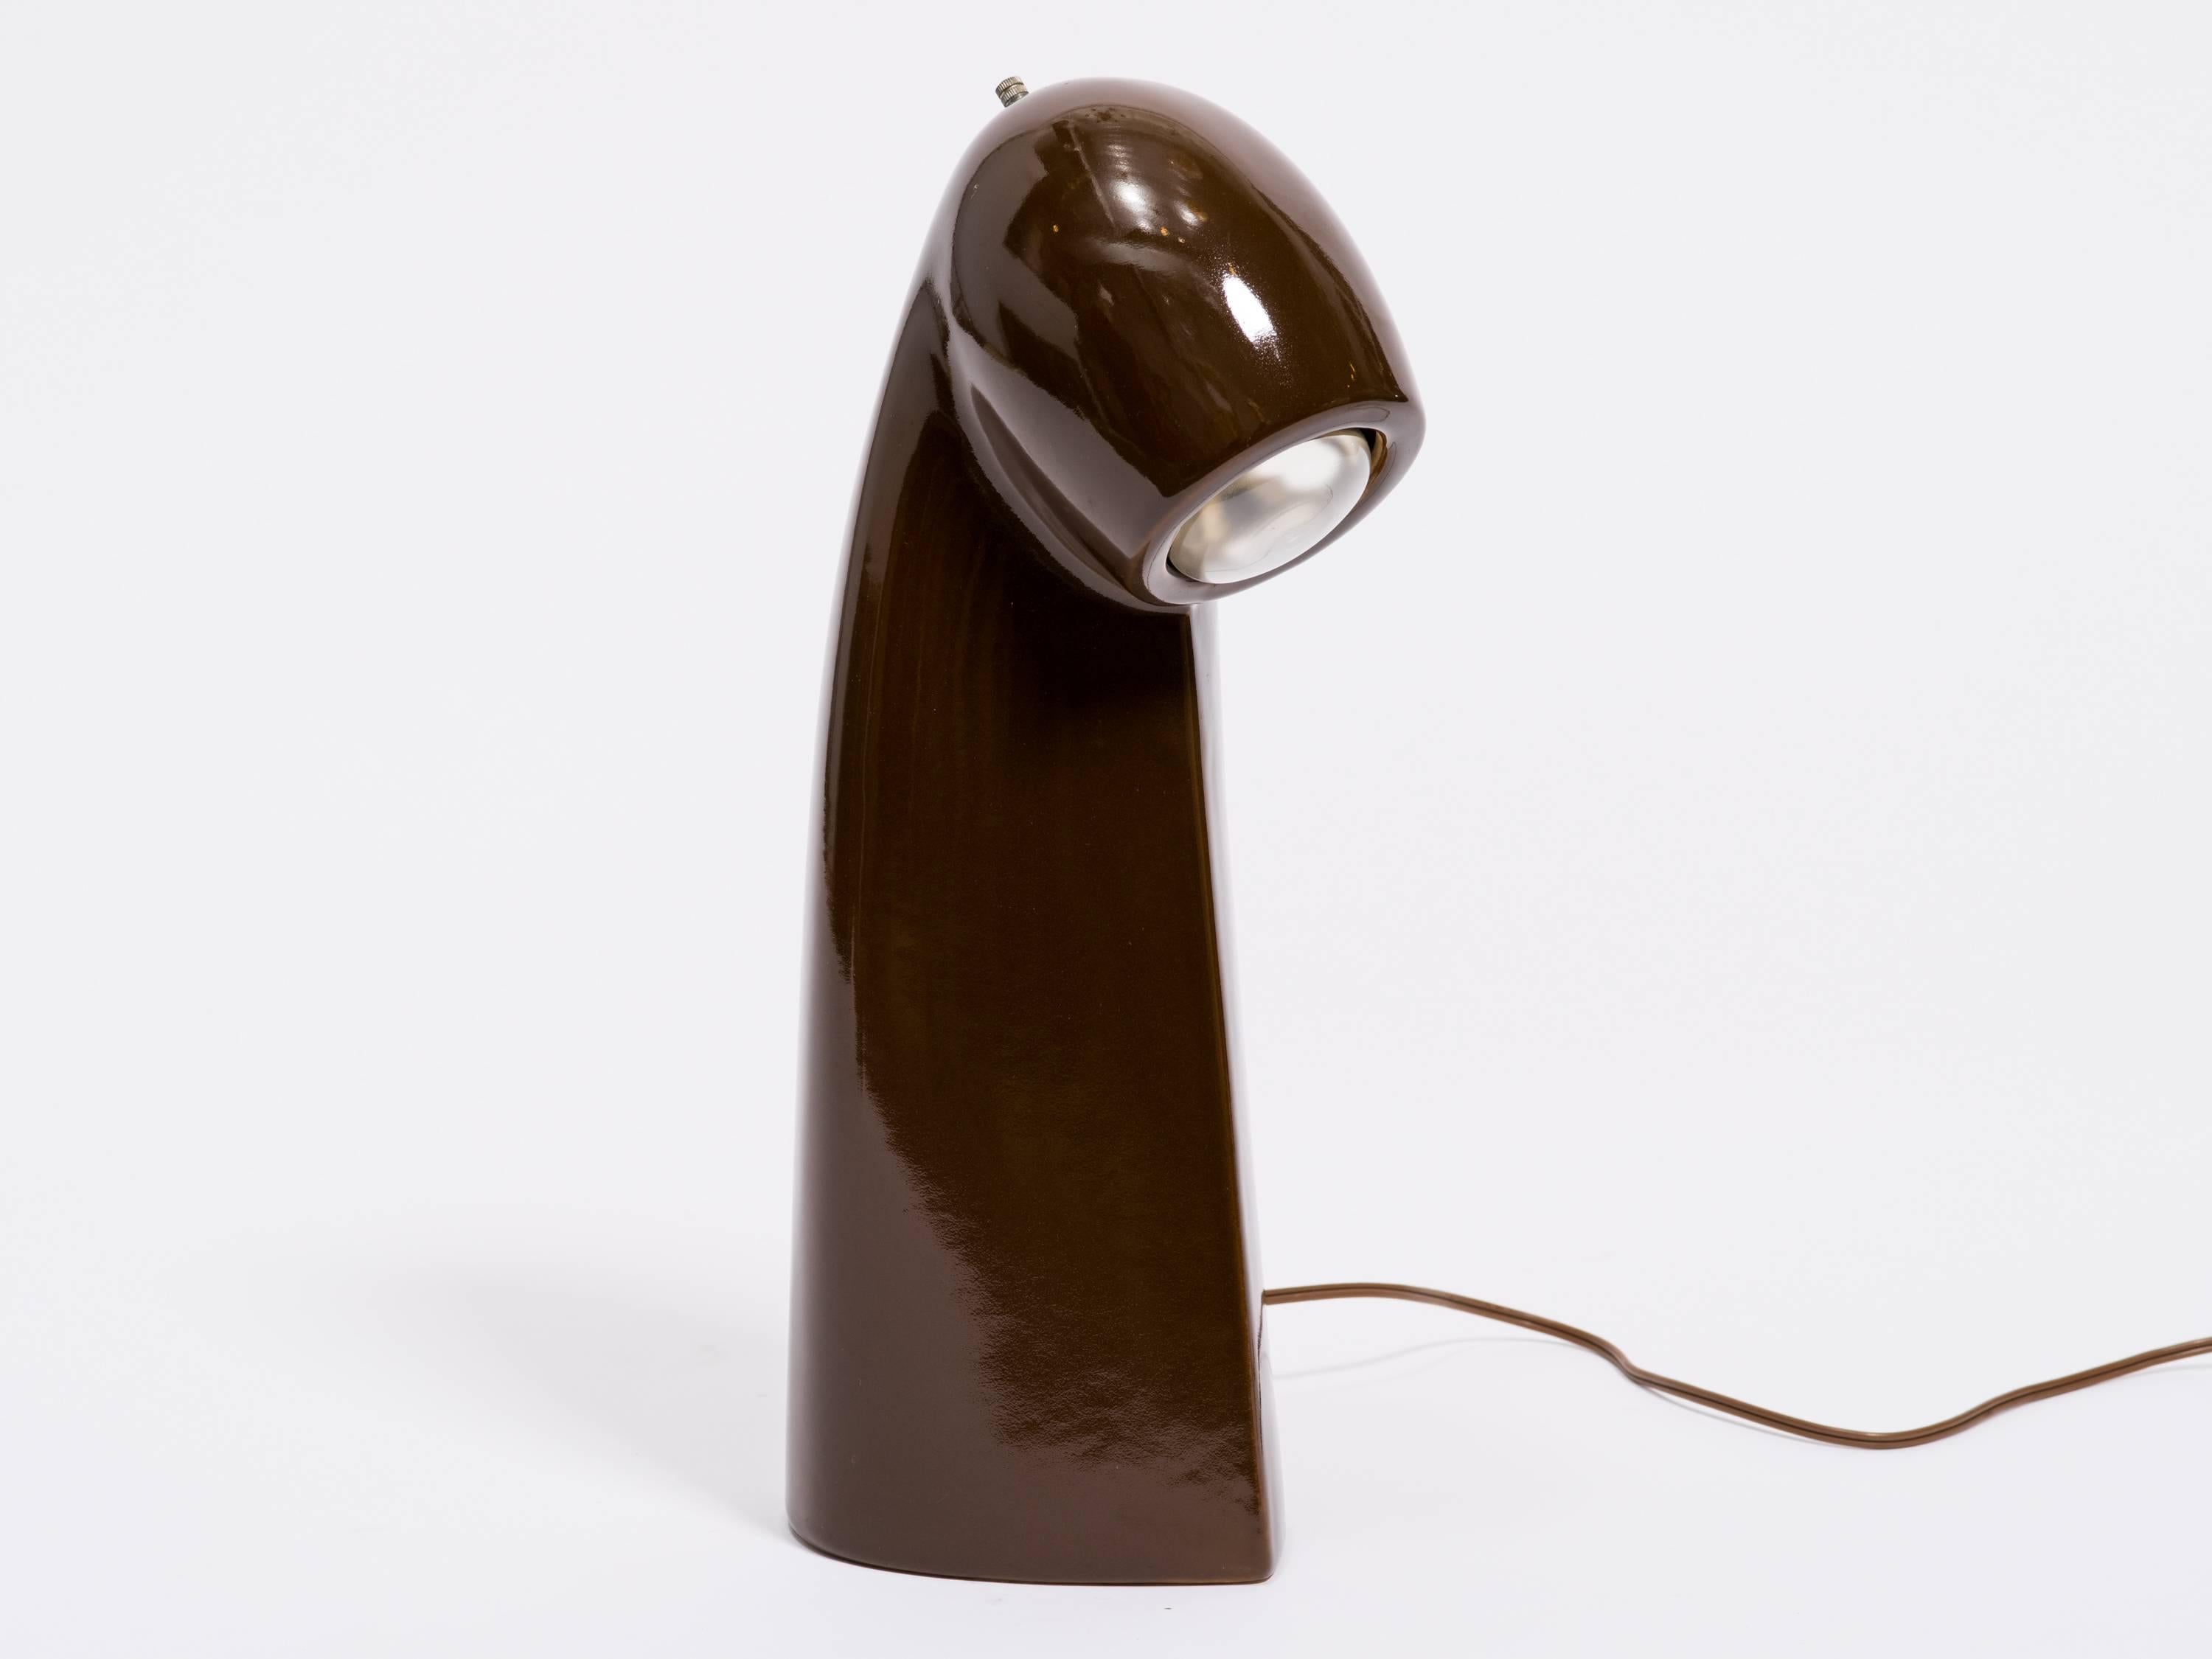 Ceramic periscope table or desk lamp.